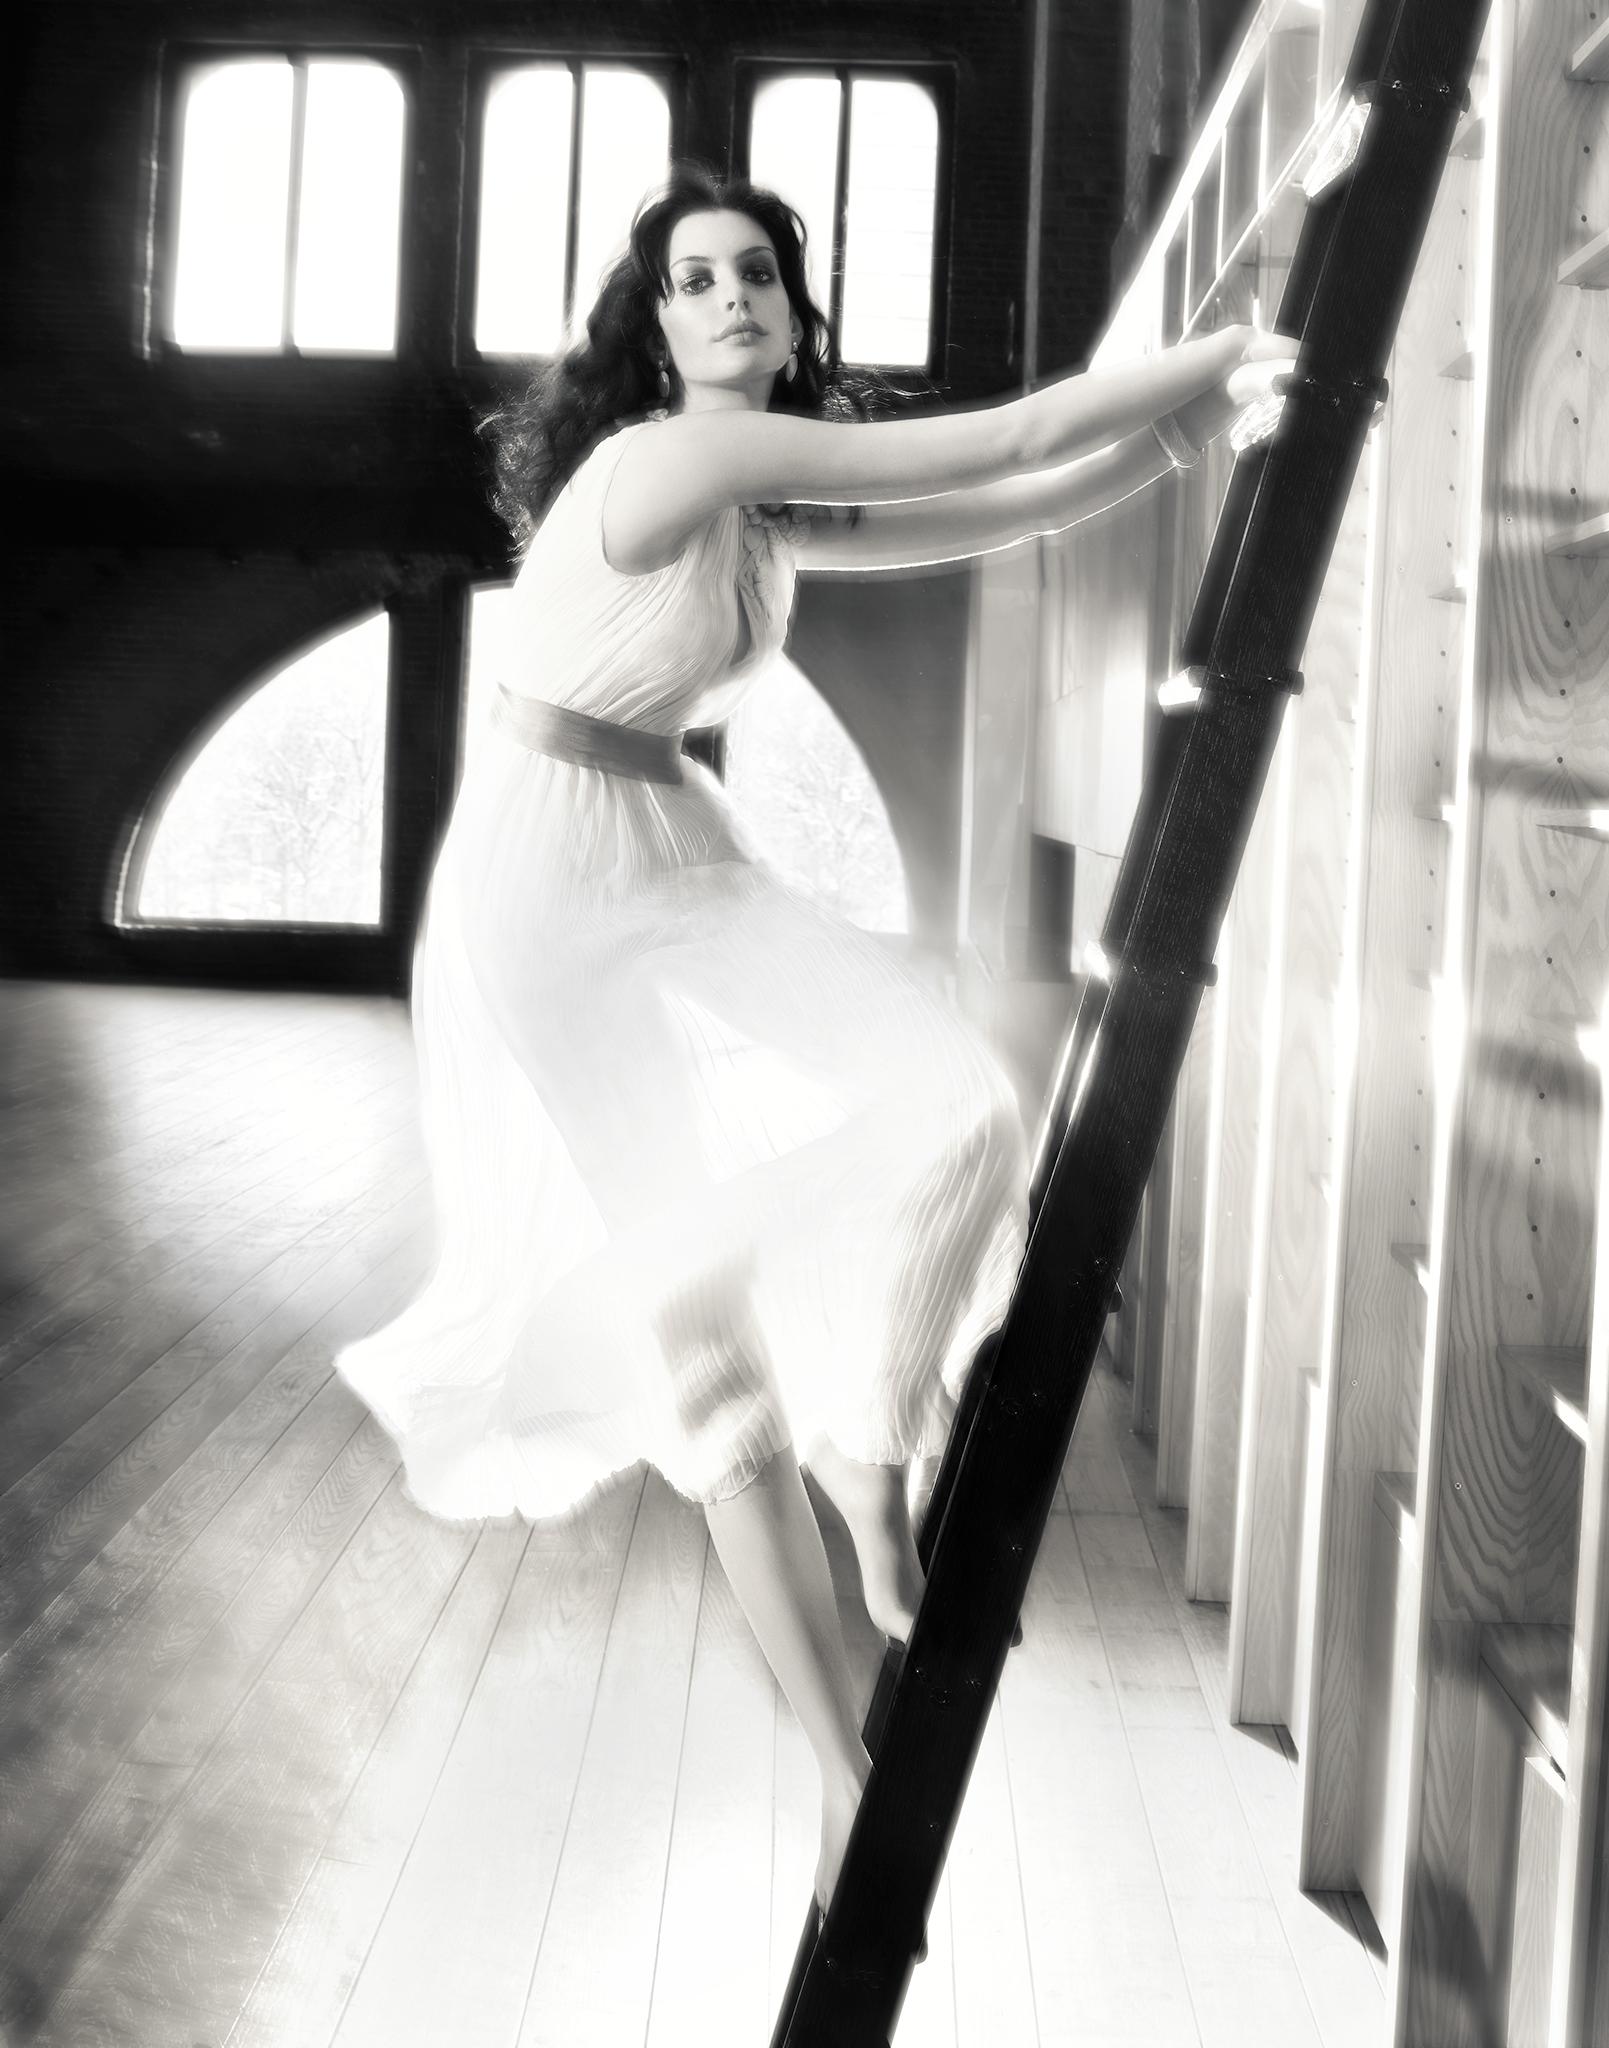 Anne Hathaway, The Ladder - Photograph by Markus Klinko